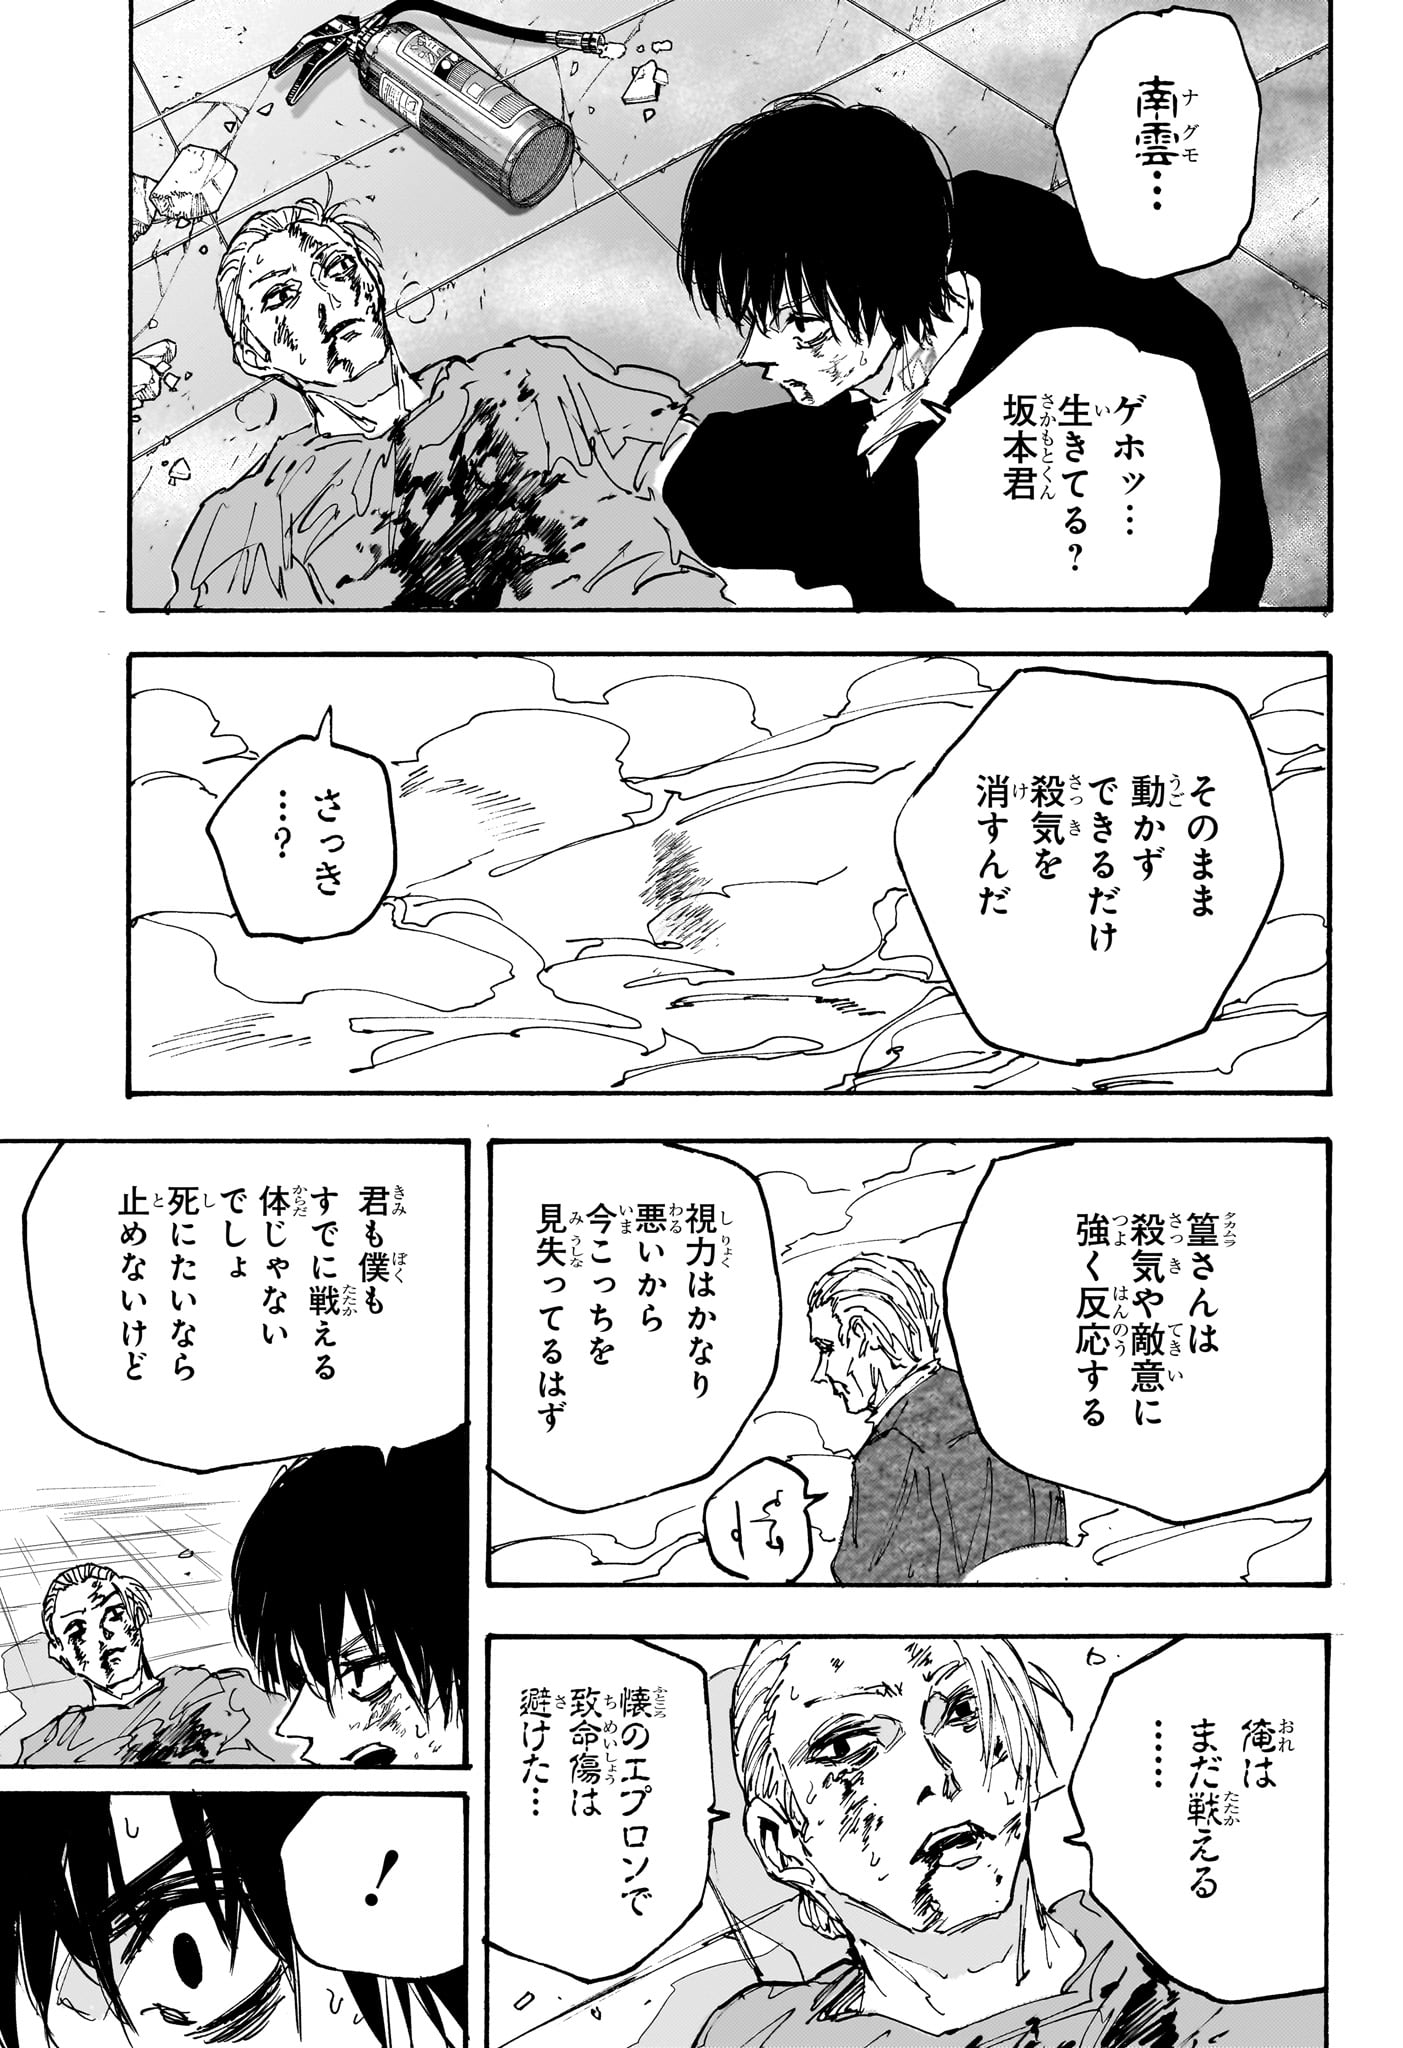 Sakamoto Days - Chapter 165 - Page 15